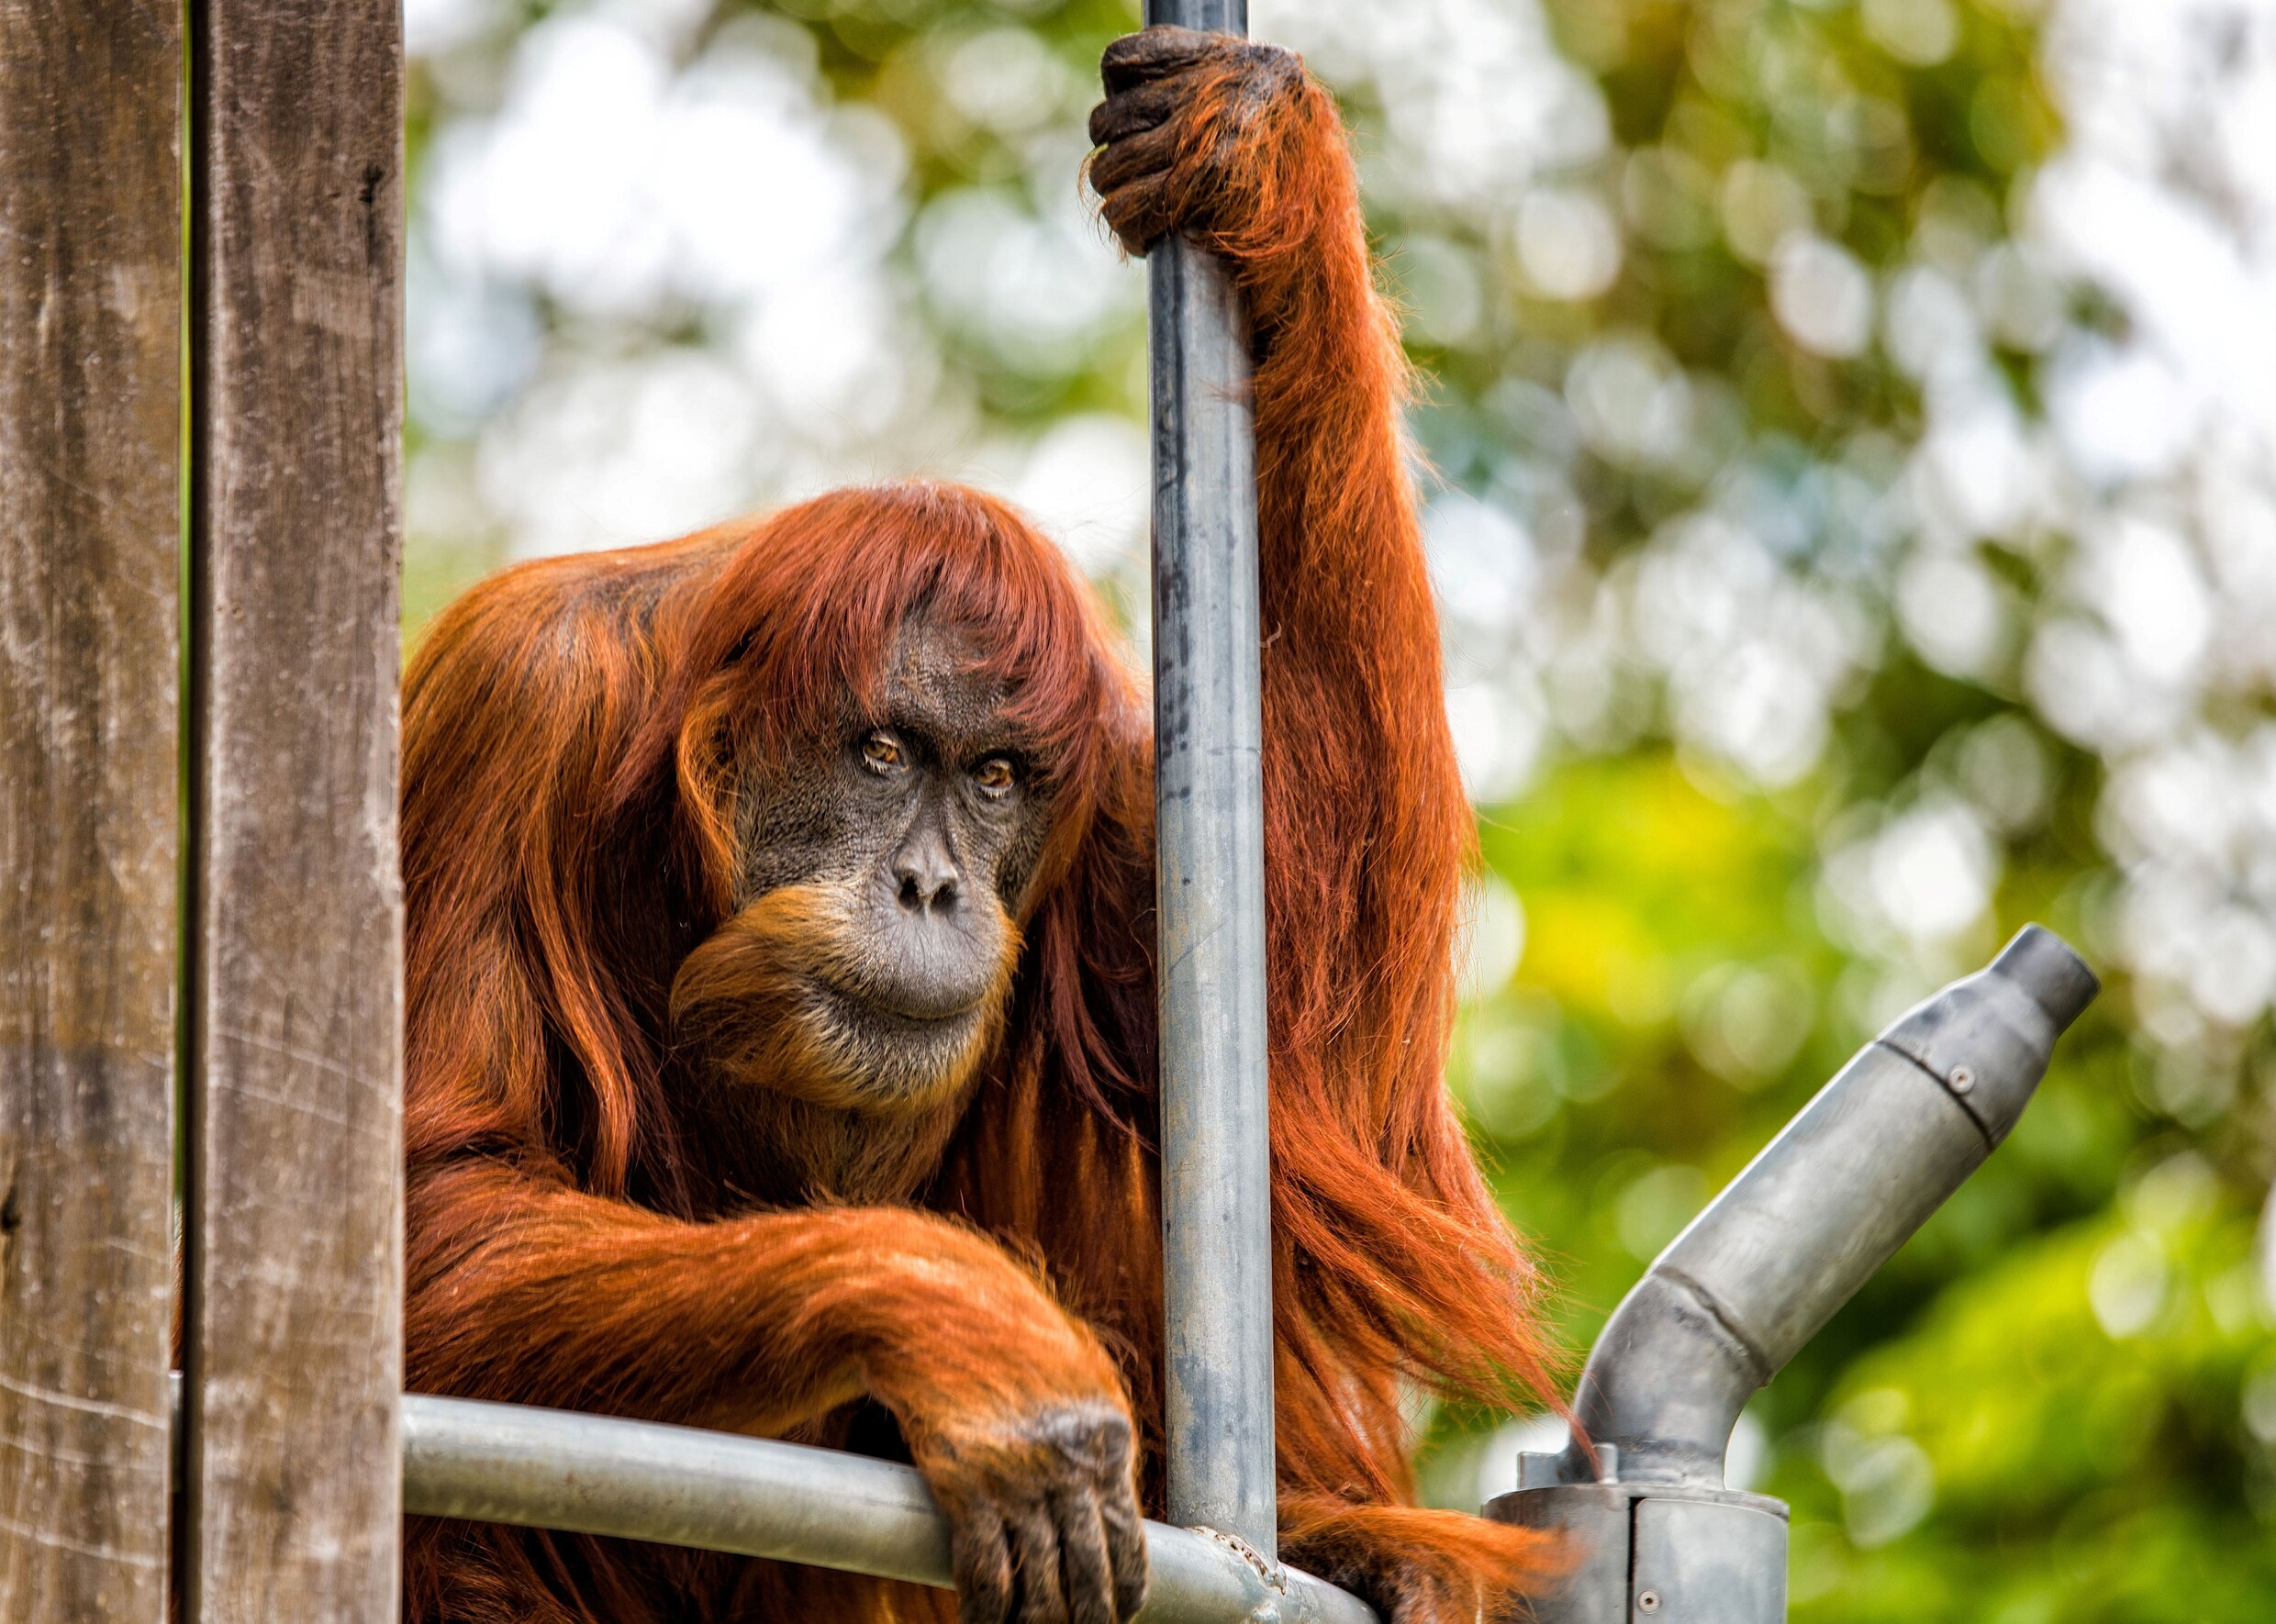 Puan, de oudste Sumatraanse orang-oetan ter wereld, is overleden